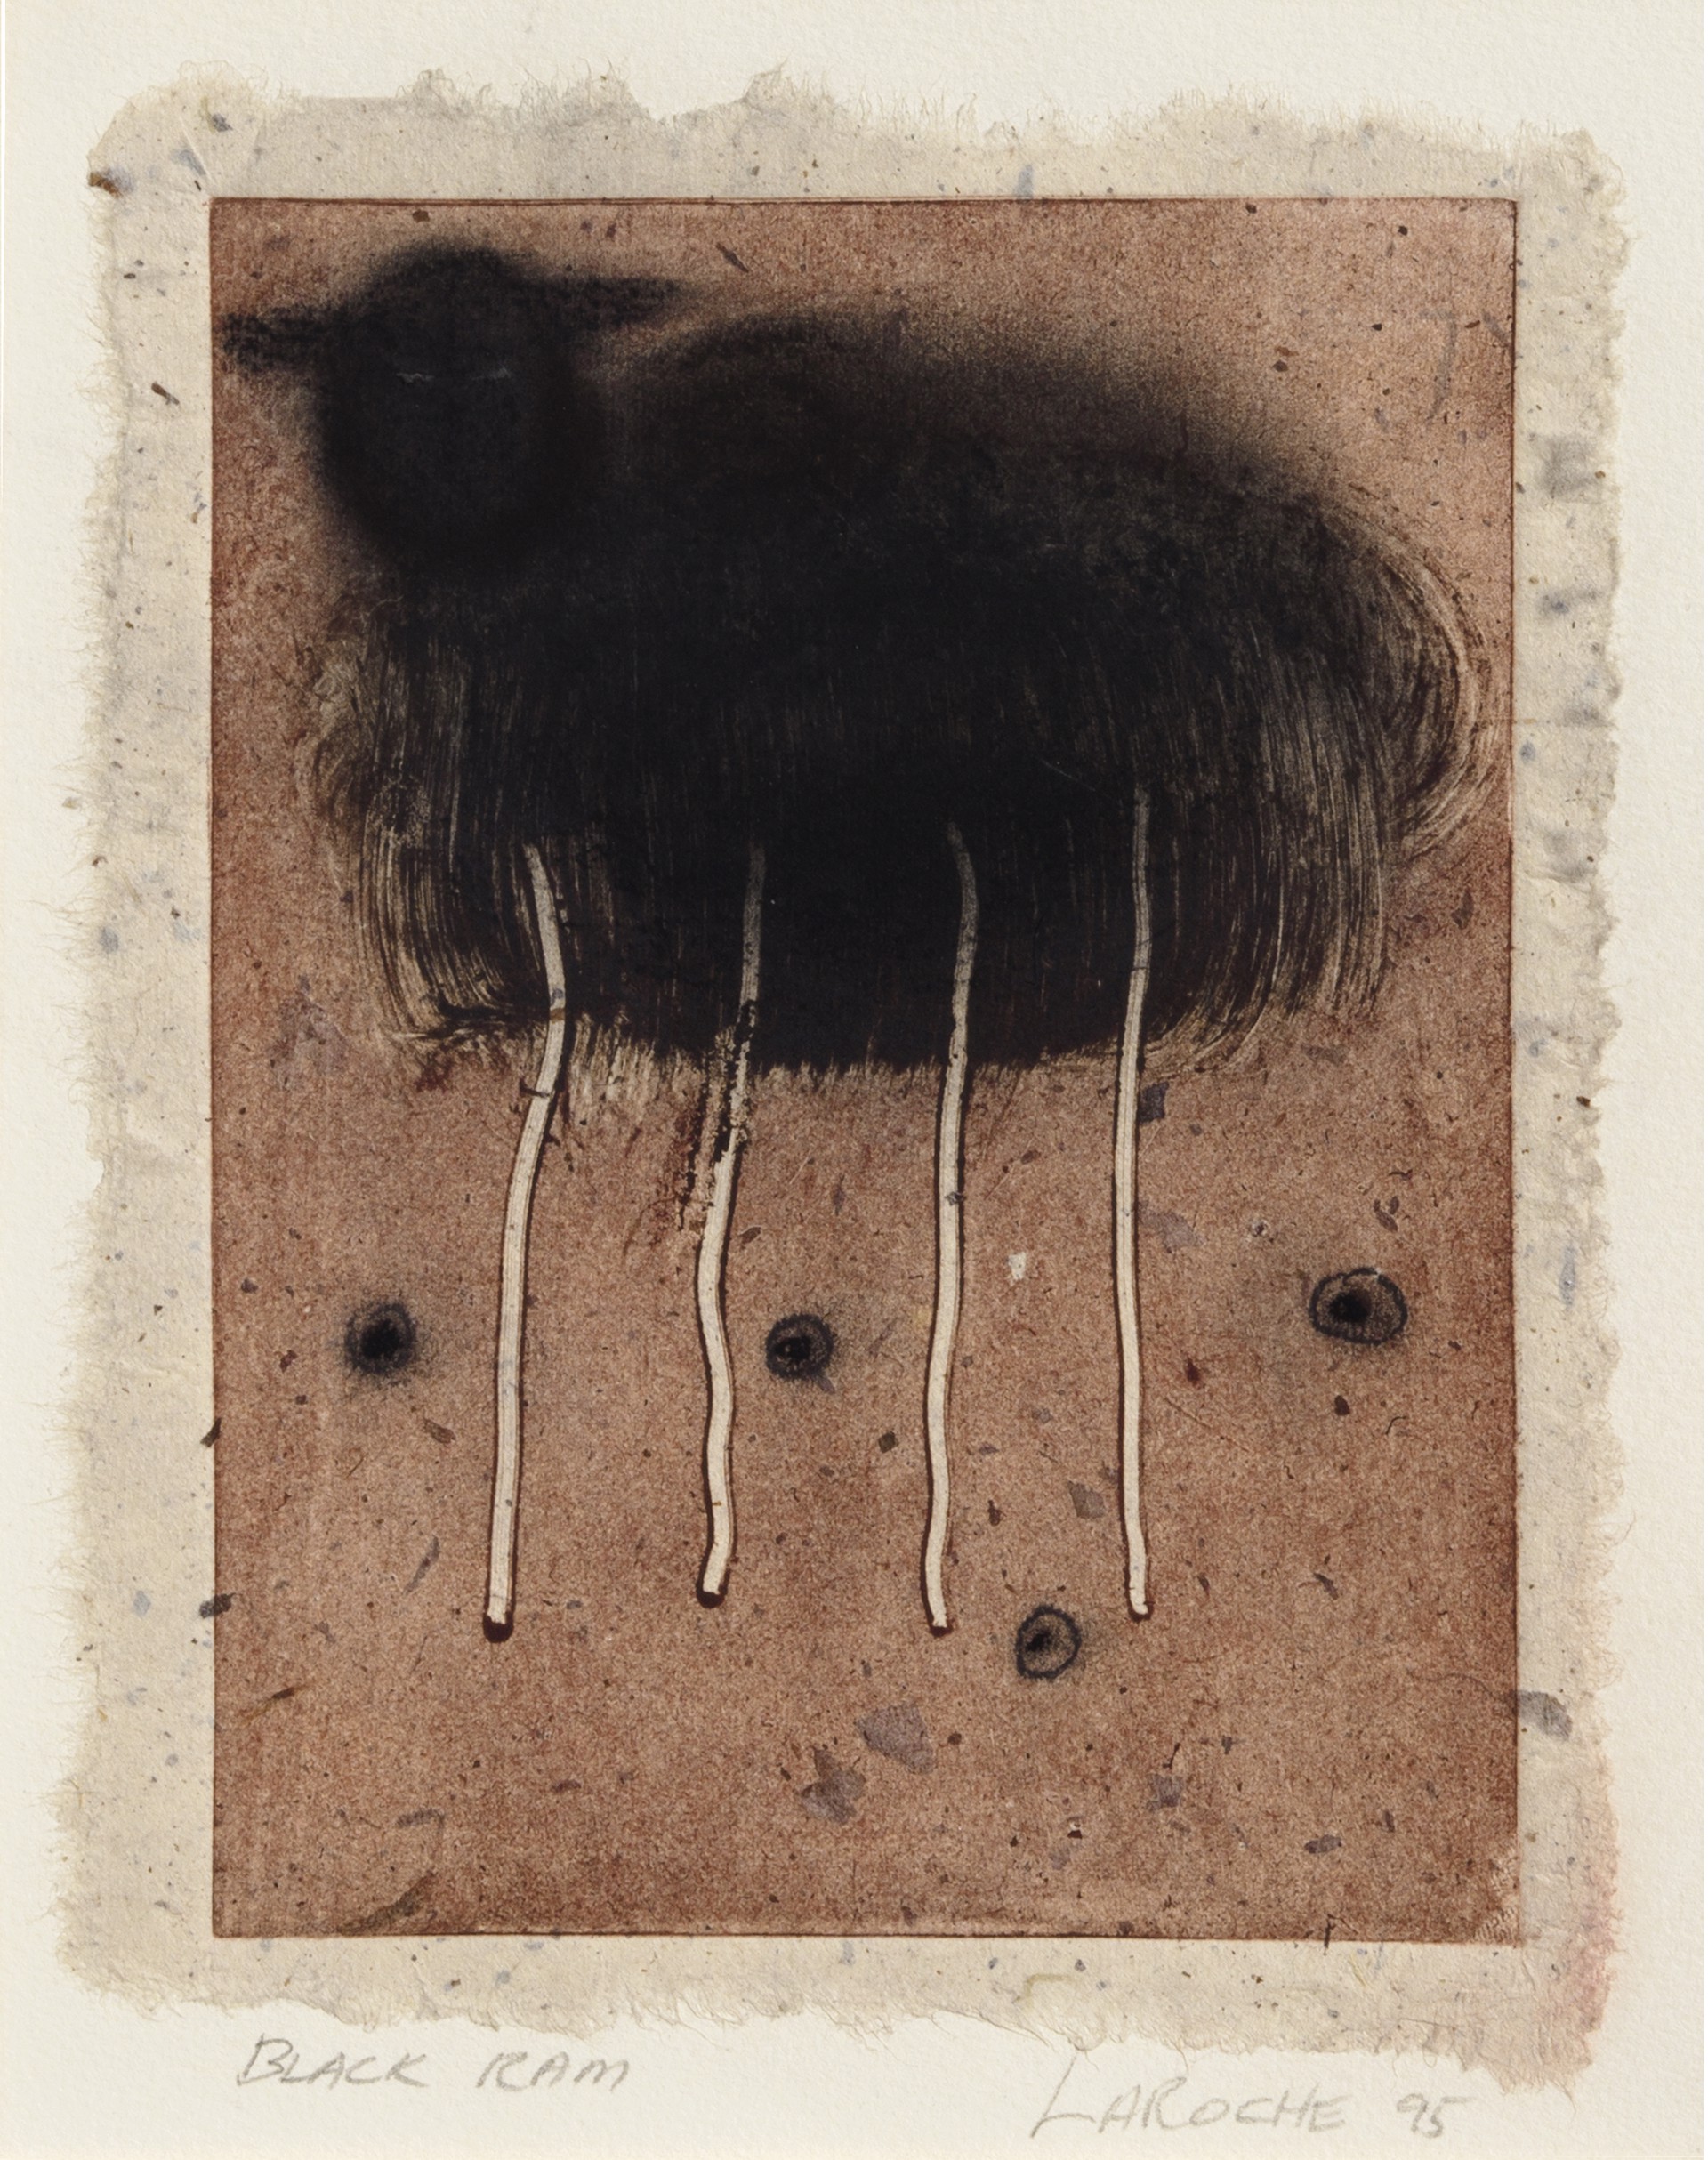 Black Ram by Carole LaRoche